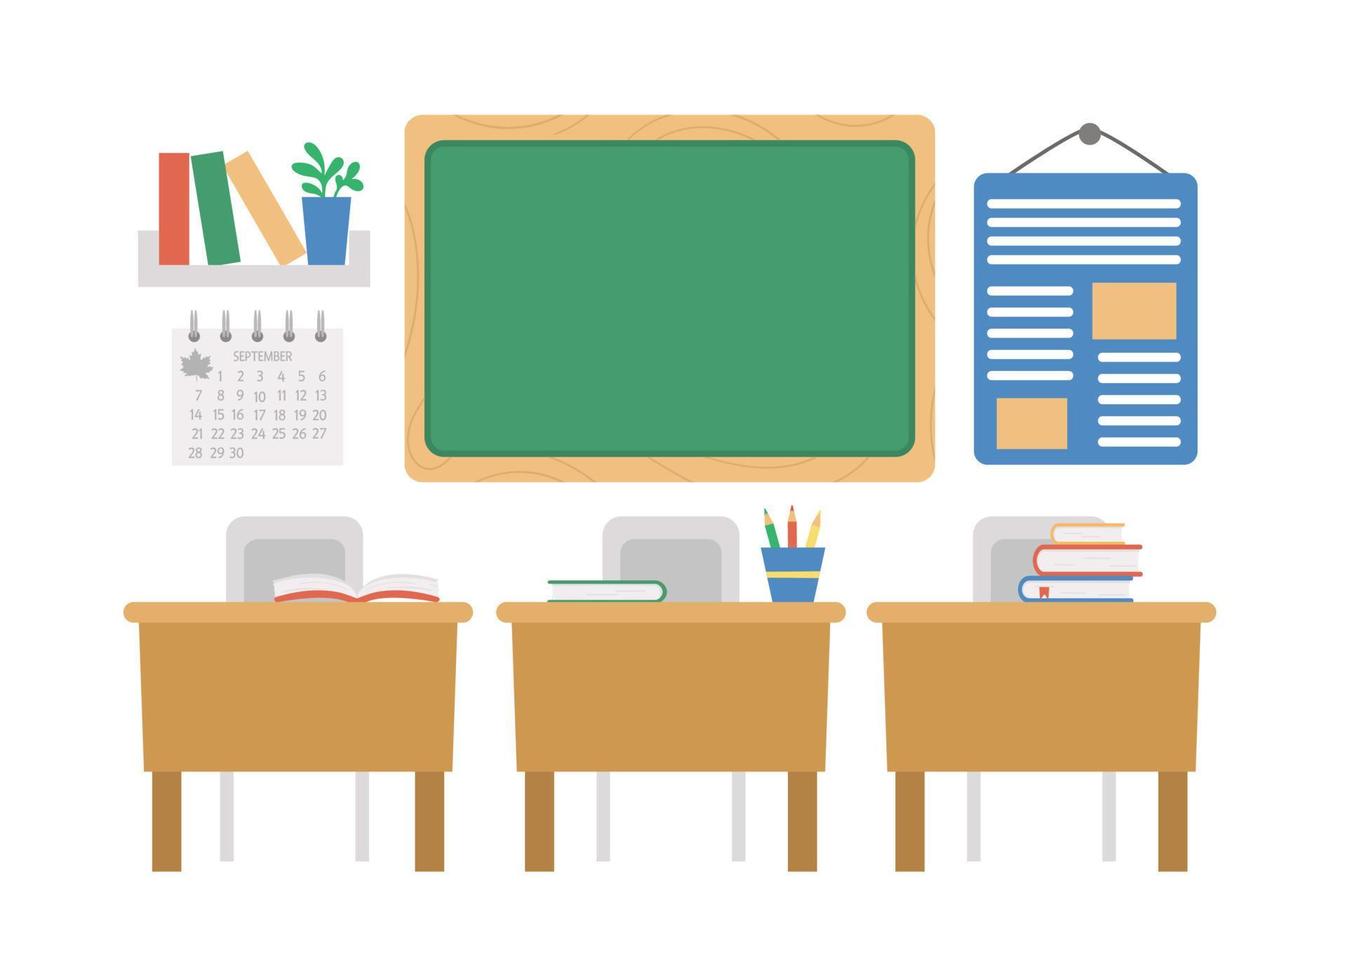 vektor tom skolklassrumsillustration. platt klassrumsinredning med tavla, skrivbord, böcker. tillbaka till skolan eller lektion koncept på vit bakgrund.